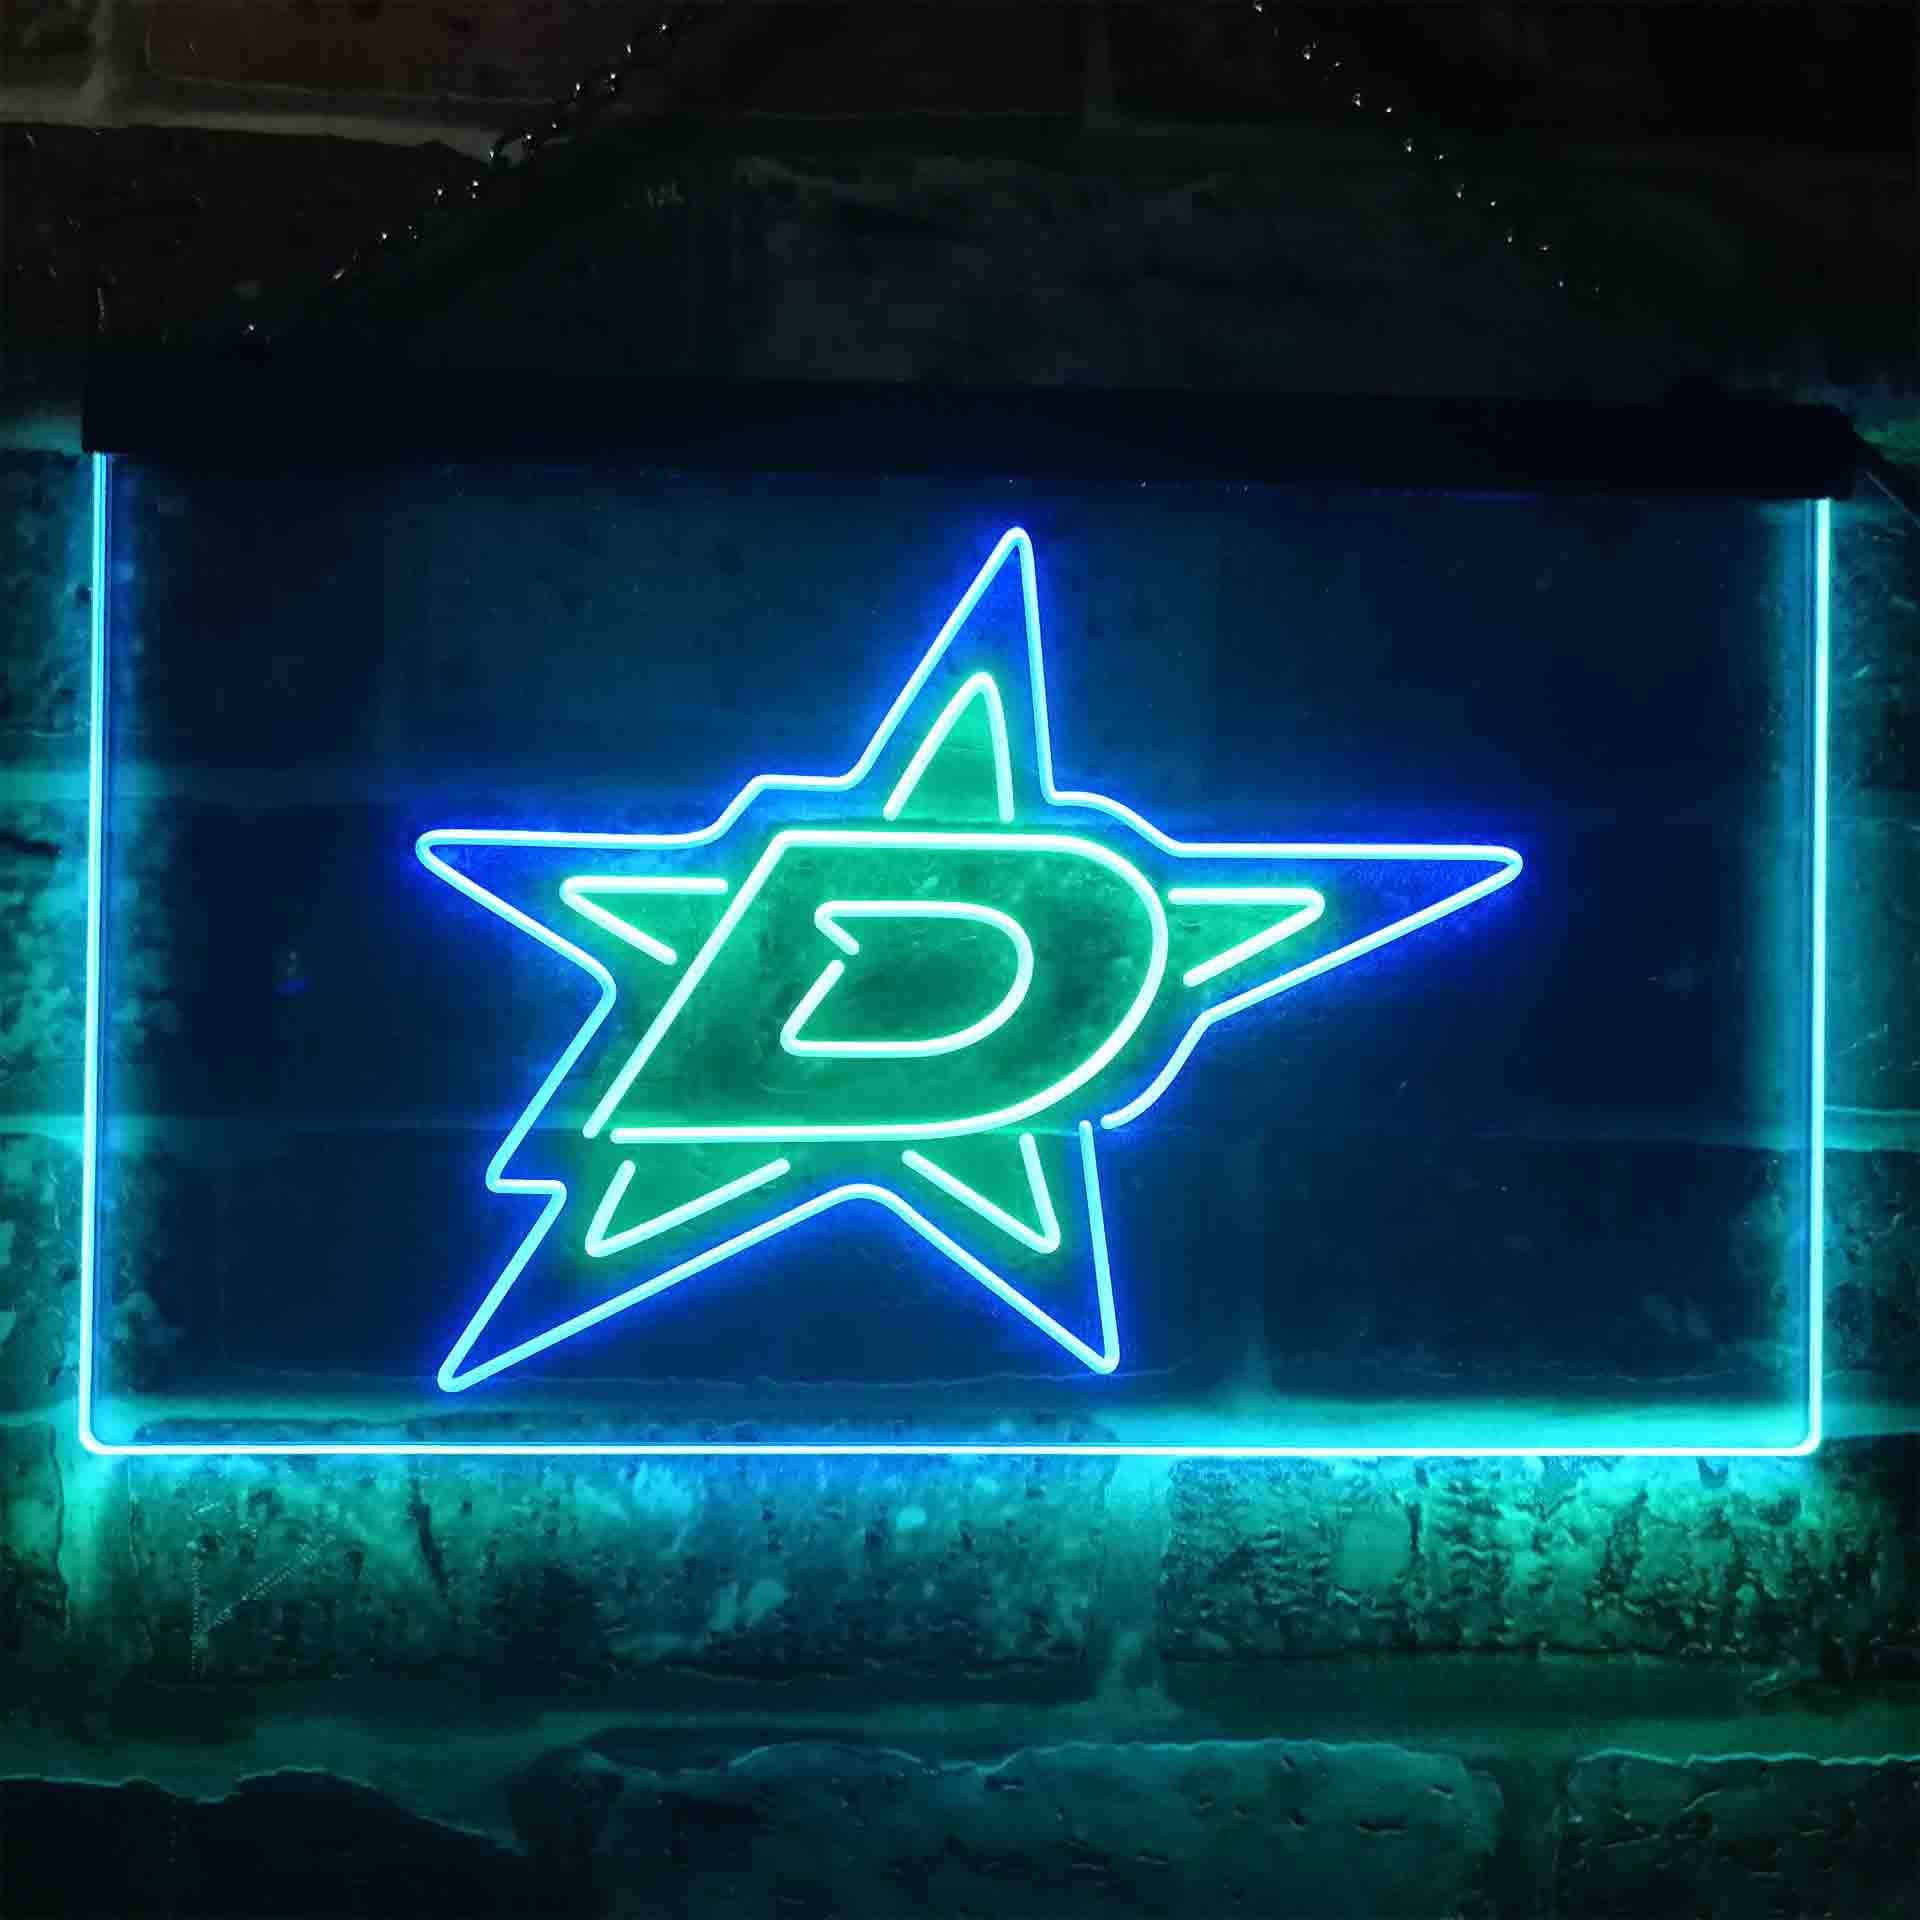 Dallas Stars Ice Hockey Neon-like LED Sign Pro LED Sign